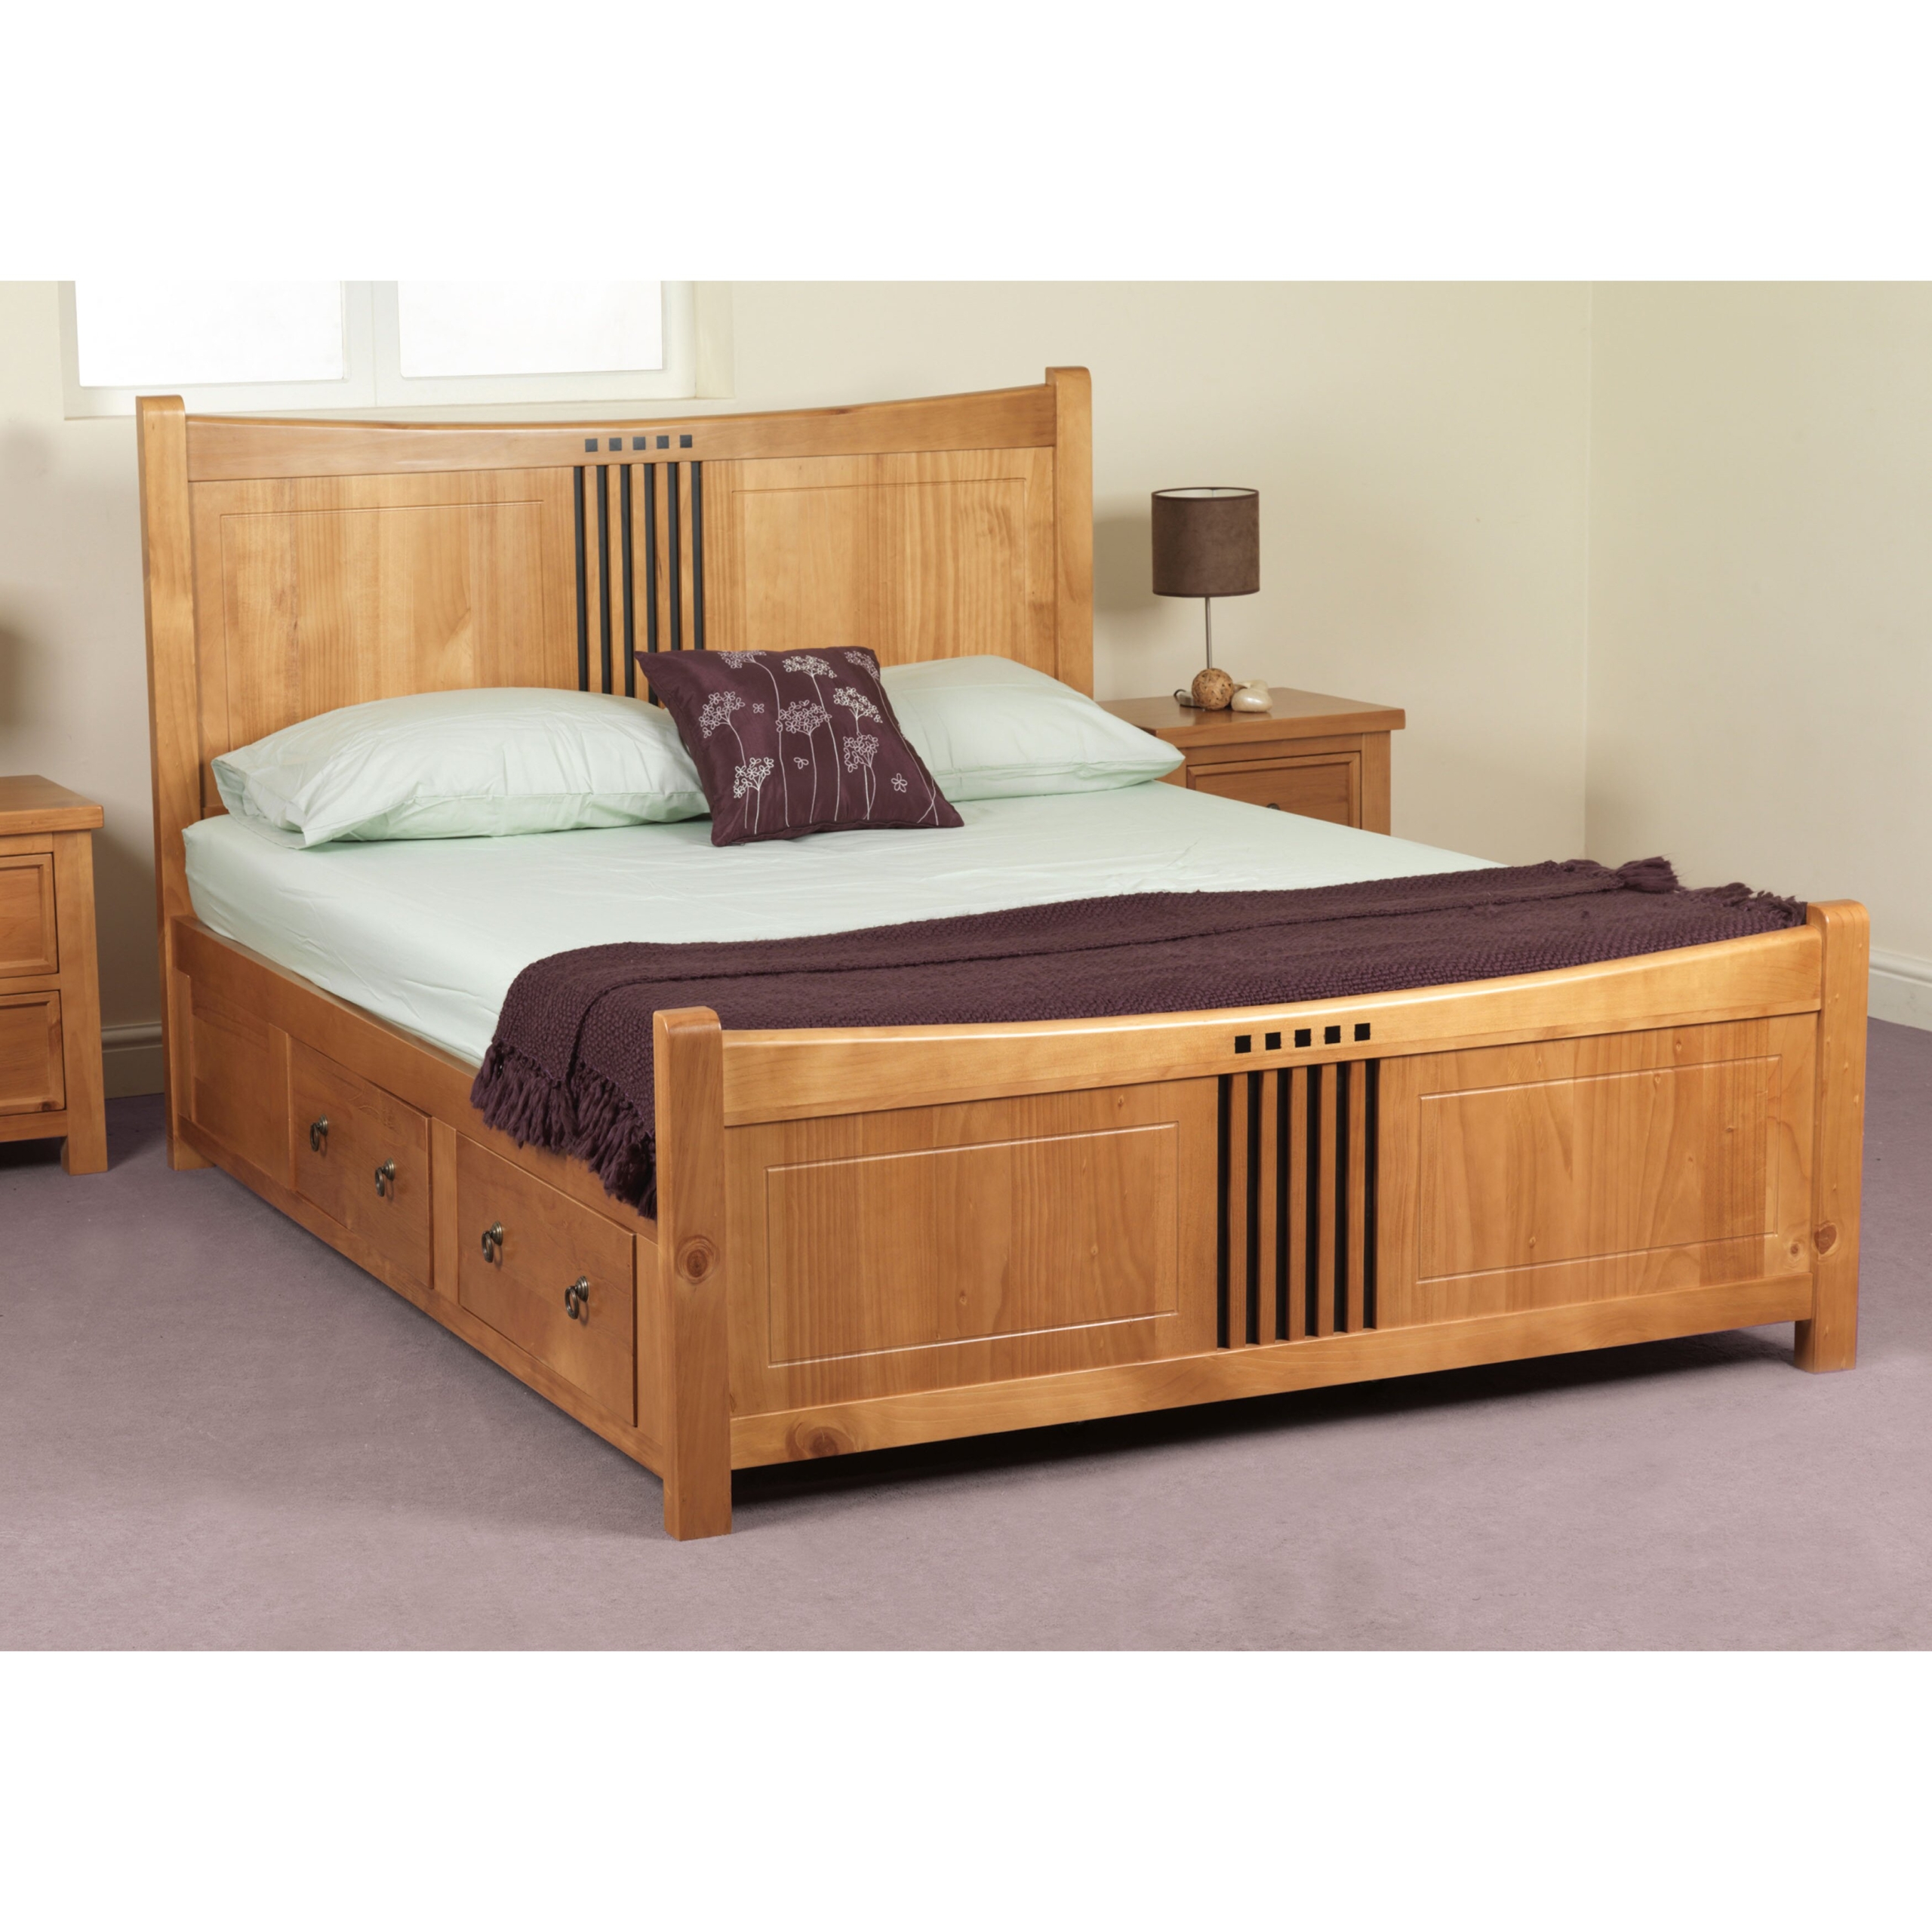 Hudson oak storage bed